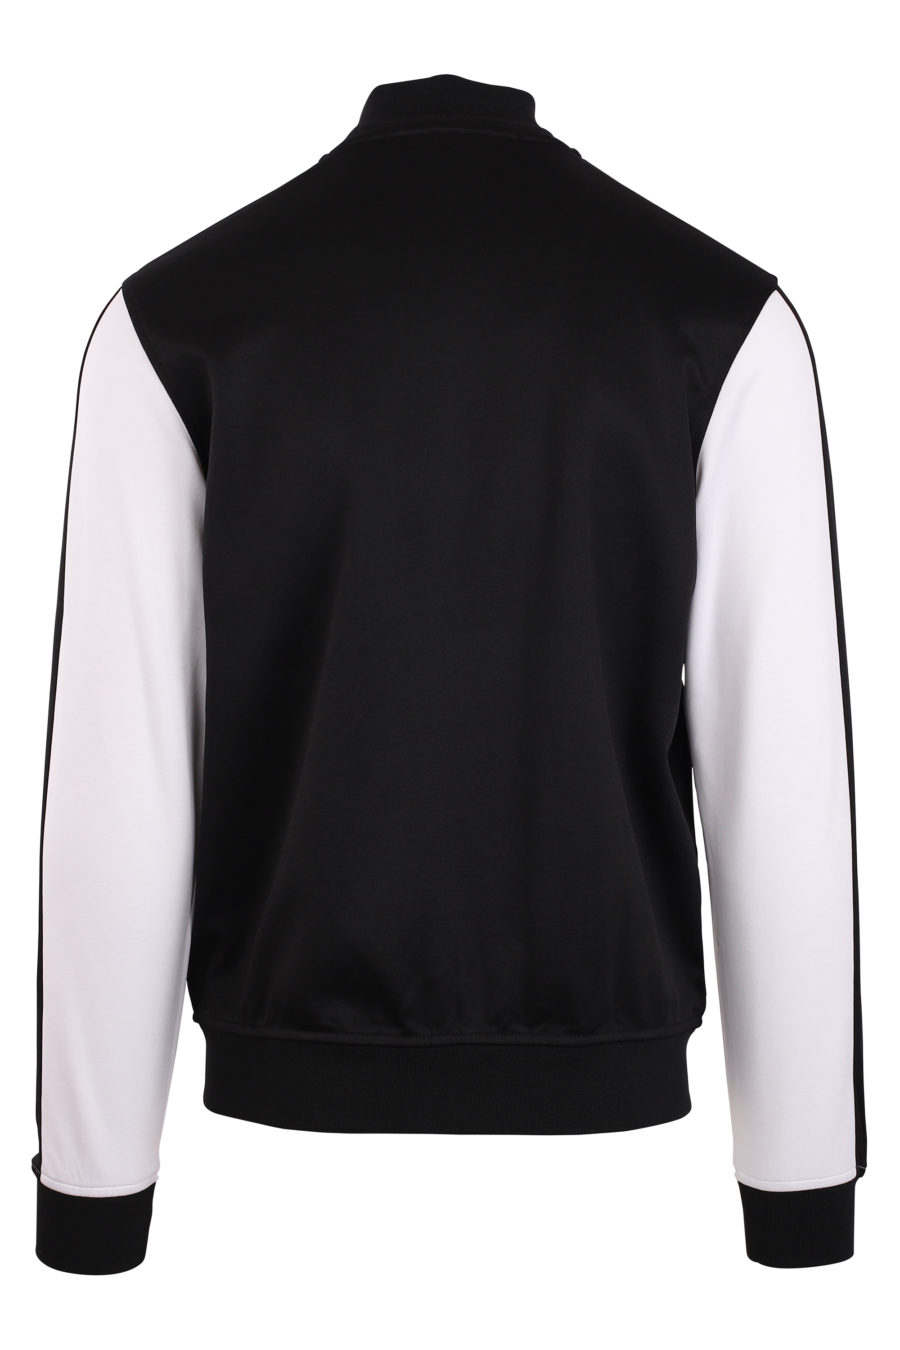 Schwarze Jacke mit weißen Ärmeln und weißem Logo - IMG 0932